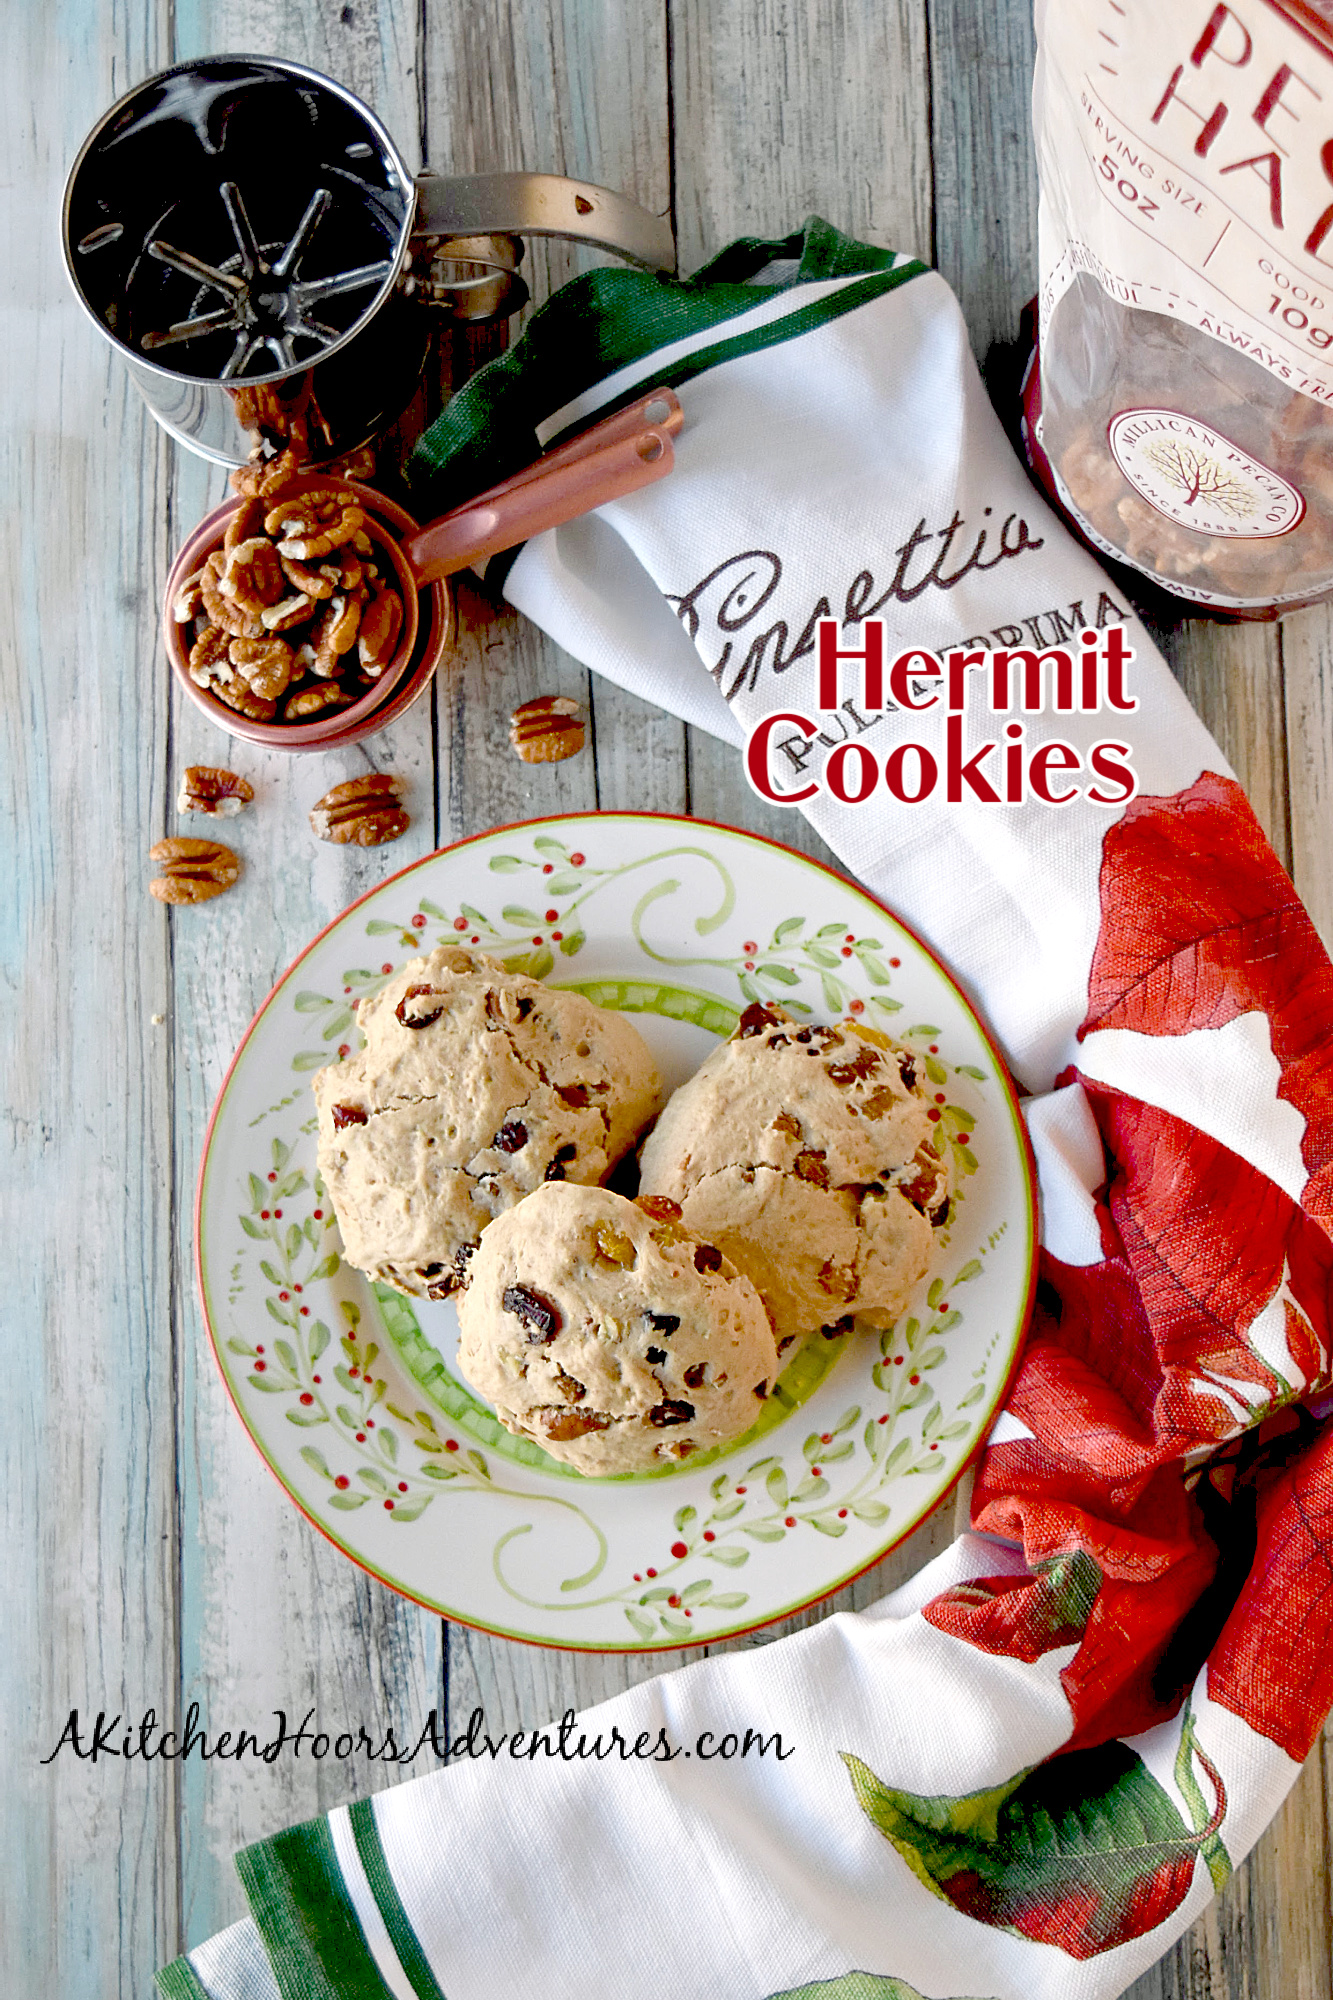 Hermit Cookies – A Kitchen Hoor's Adventures